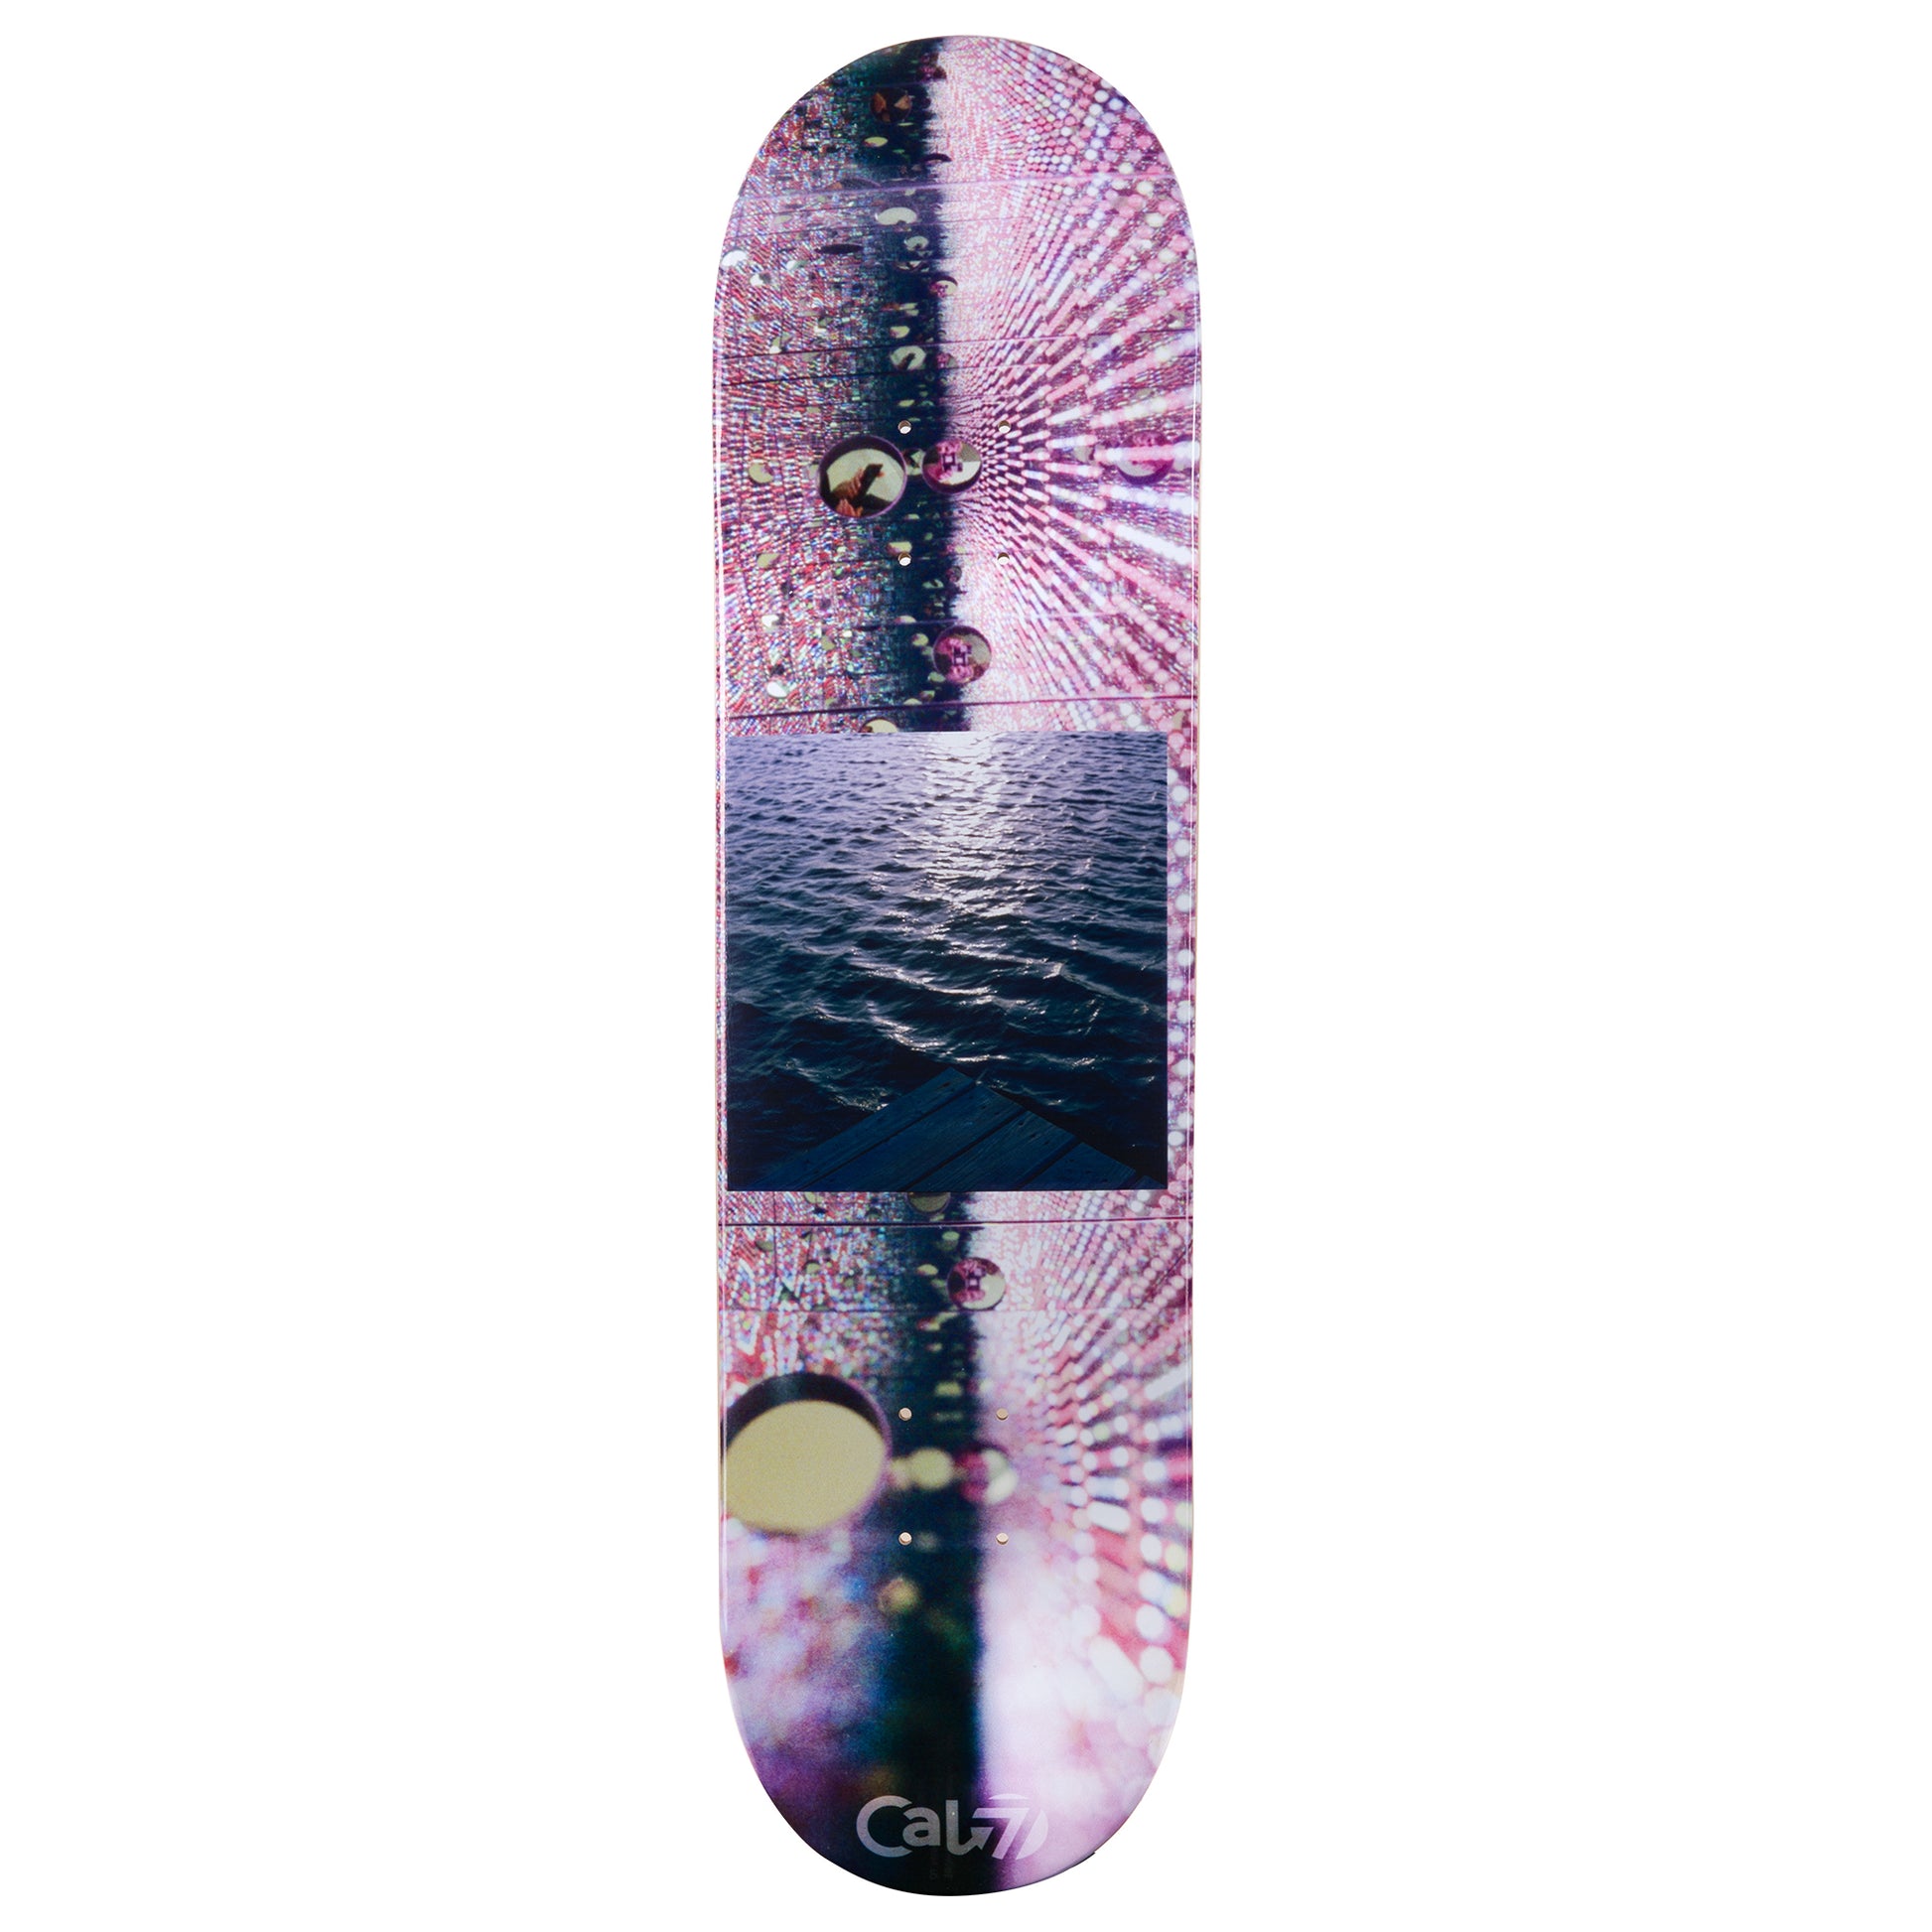 Reservoir Skateboard Deck - Cold Pressed – Cal 7